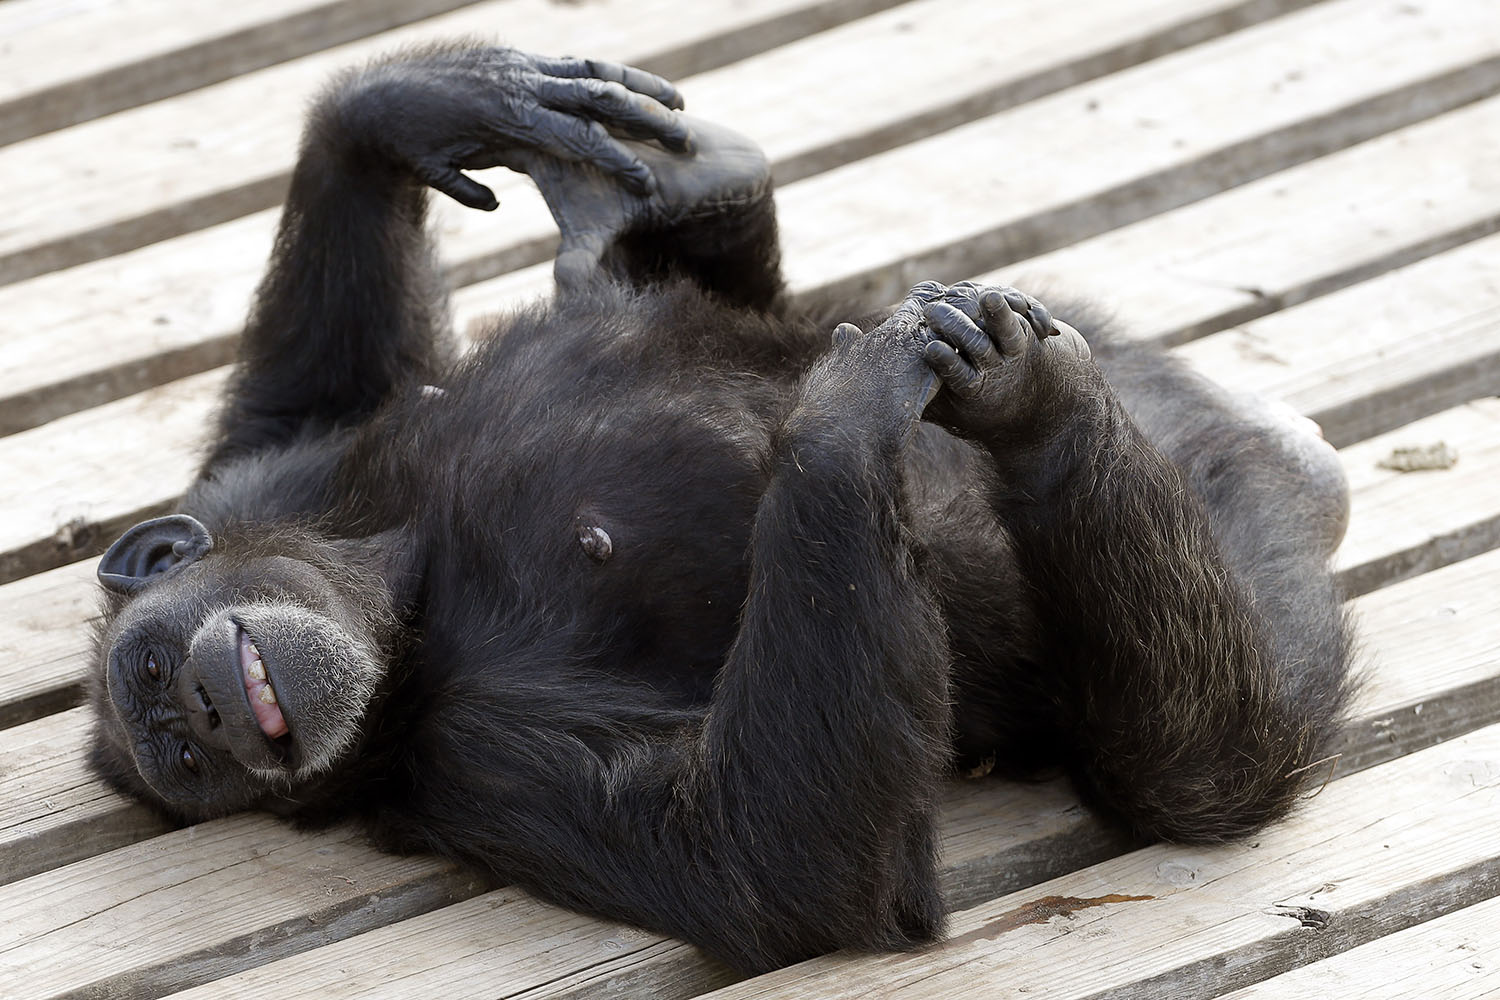 Corte en Nueva York analiza si un chimpancé tiene derechos como un humano